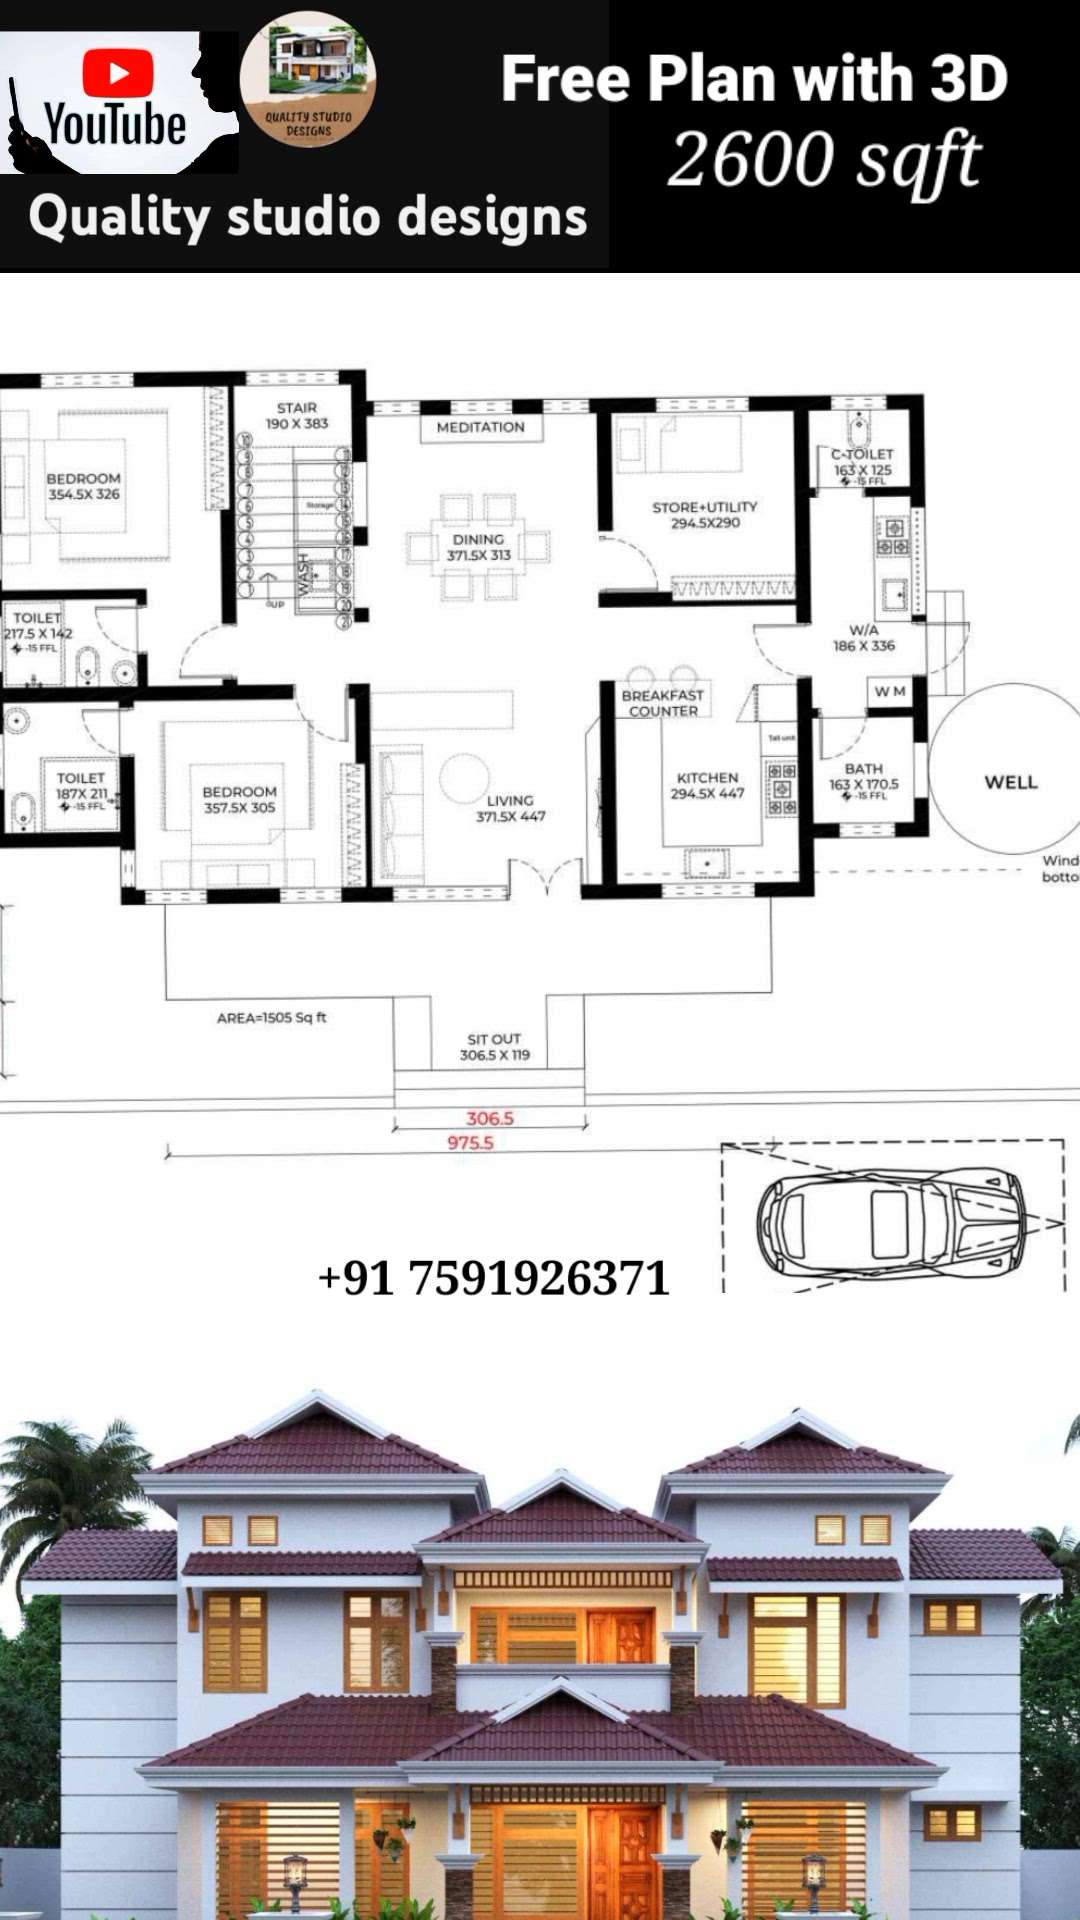 💠നിങ്ങളുടെ സ്വപ്ന ഭവനങ്ങളുടെ  3D view,പ്ലാൻ ഏറ്റവും കുറഞ്ഞ നിരക്കിൽ നിങ്ങൾ ഇഷ്ടപ്പെടുന്ന രീതിയിൽ ....

📱call / whatsup : Wa.me/+91 7591926371
🏬🏫 Quality studio designs

#lowbudget  #lowcostdesign  #exteriordesigns  #3dmodeling  #FloorPlans#3DFloorPlan #narrowhouseplan  #apartmentdesign #2BHKPlans  #abcco   #lifemission  #lifehomes #3BHKHouse  #4BHKPlans  #ContemporaryHouse  #contemporary  #contemporaryart  #koloviral  #kerlahouse  #kerlaarchitecture  #kerlatreditional  #lowcosthouse  #lowcost  #keralastyle  #kerlaarchitecture  #trendy #nalukettveddu #nalukettuarchitecturestyle #nalukettveddu #Nalukettu